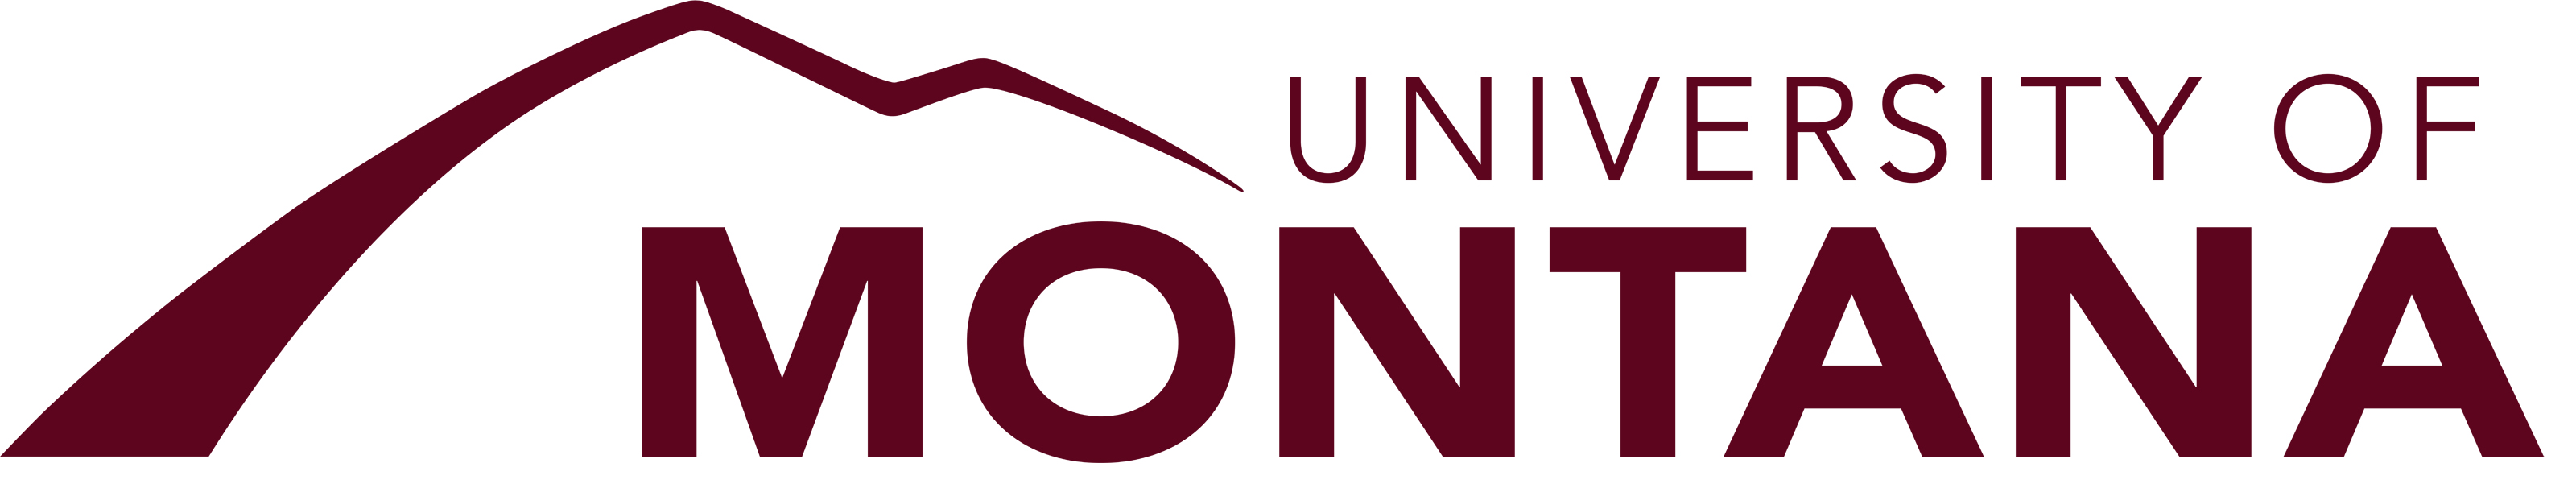 UM Main Logo Maroon.jpg